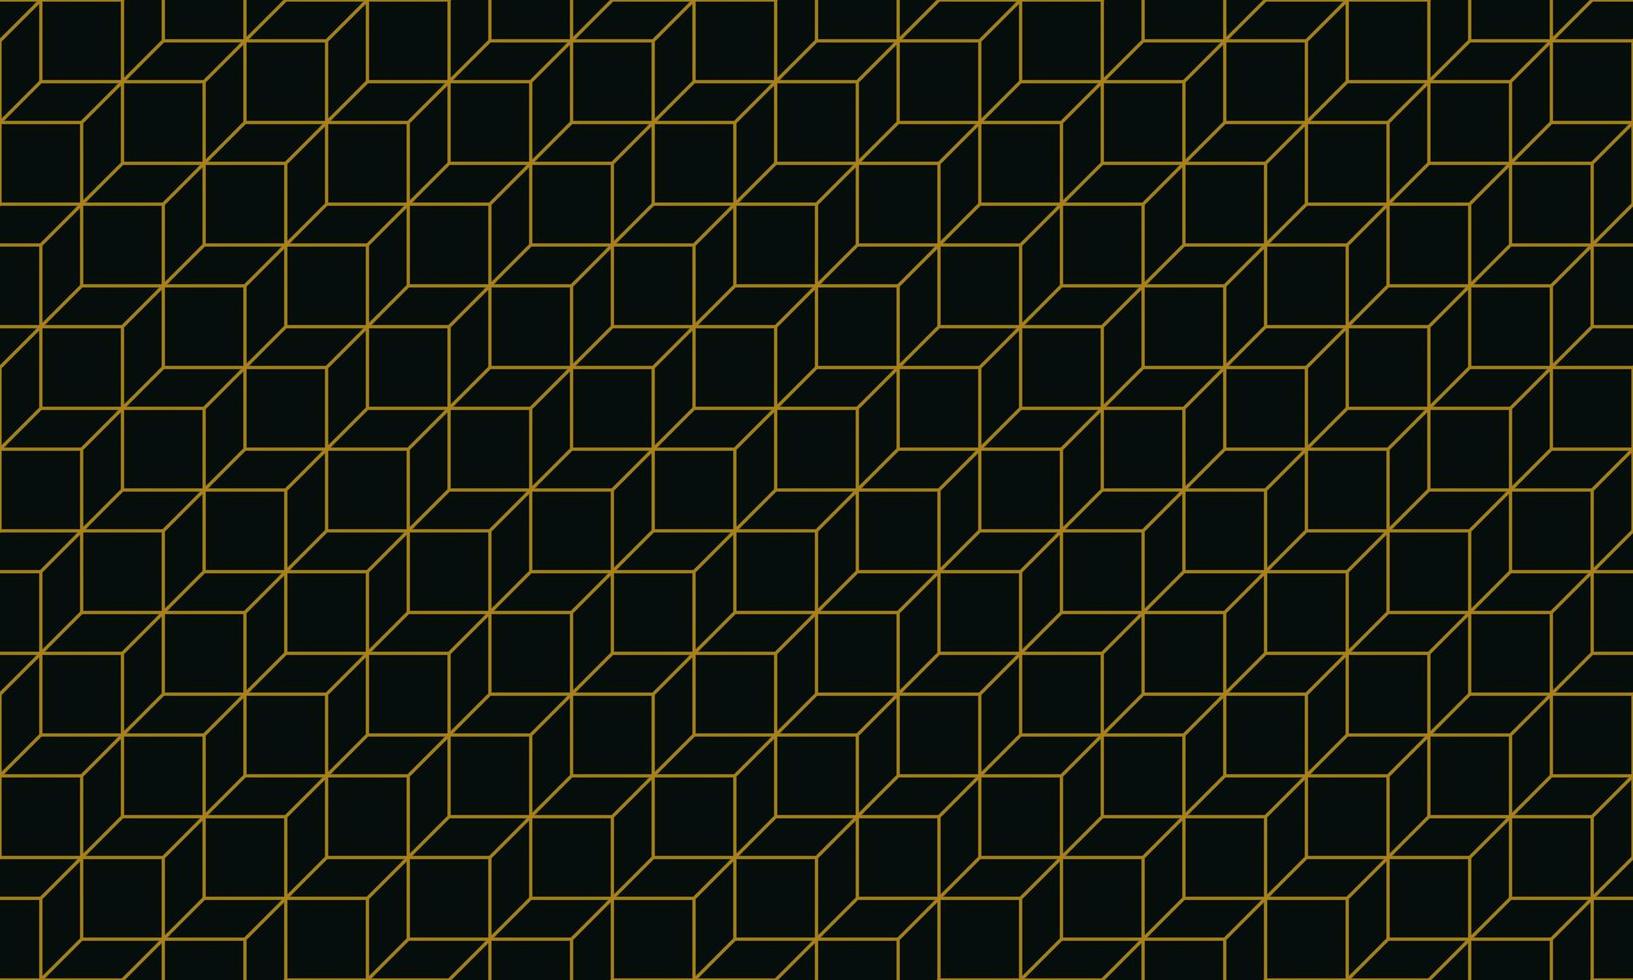 geometrische Linie Kunsthintergrund. einfache Grafikillustration von flachen Formen, quadratischen Segmenten, Parallelogrammen, Rauten, Sechsecken. Luxus-Premium-Hintergrund mit nahtlosem Muster, Vektor in Schwarz und Gold.